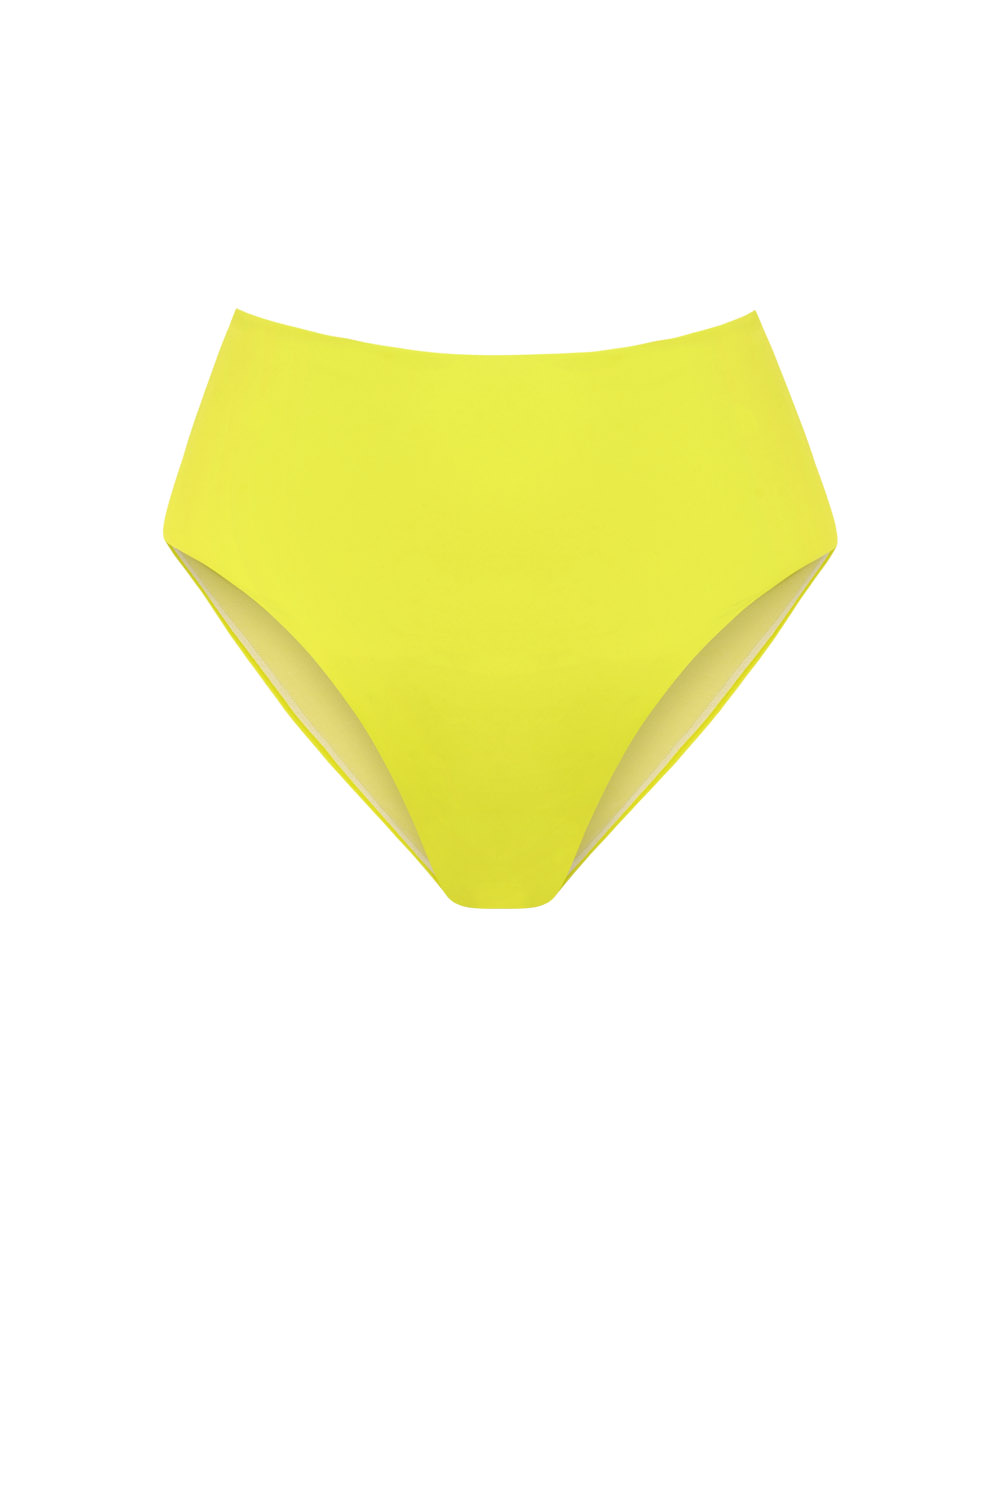 Farond eco bikini bottom in Lake Green, Nowthenlabel, now then swimwear, Swimwear for women, women’s swimwear, one piece, bikinis women, Swimwear 2023, bikinis 2023, recycled swimwear, eco friendly bikinis,